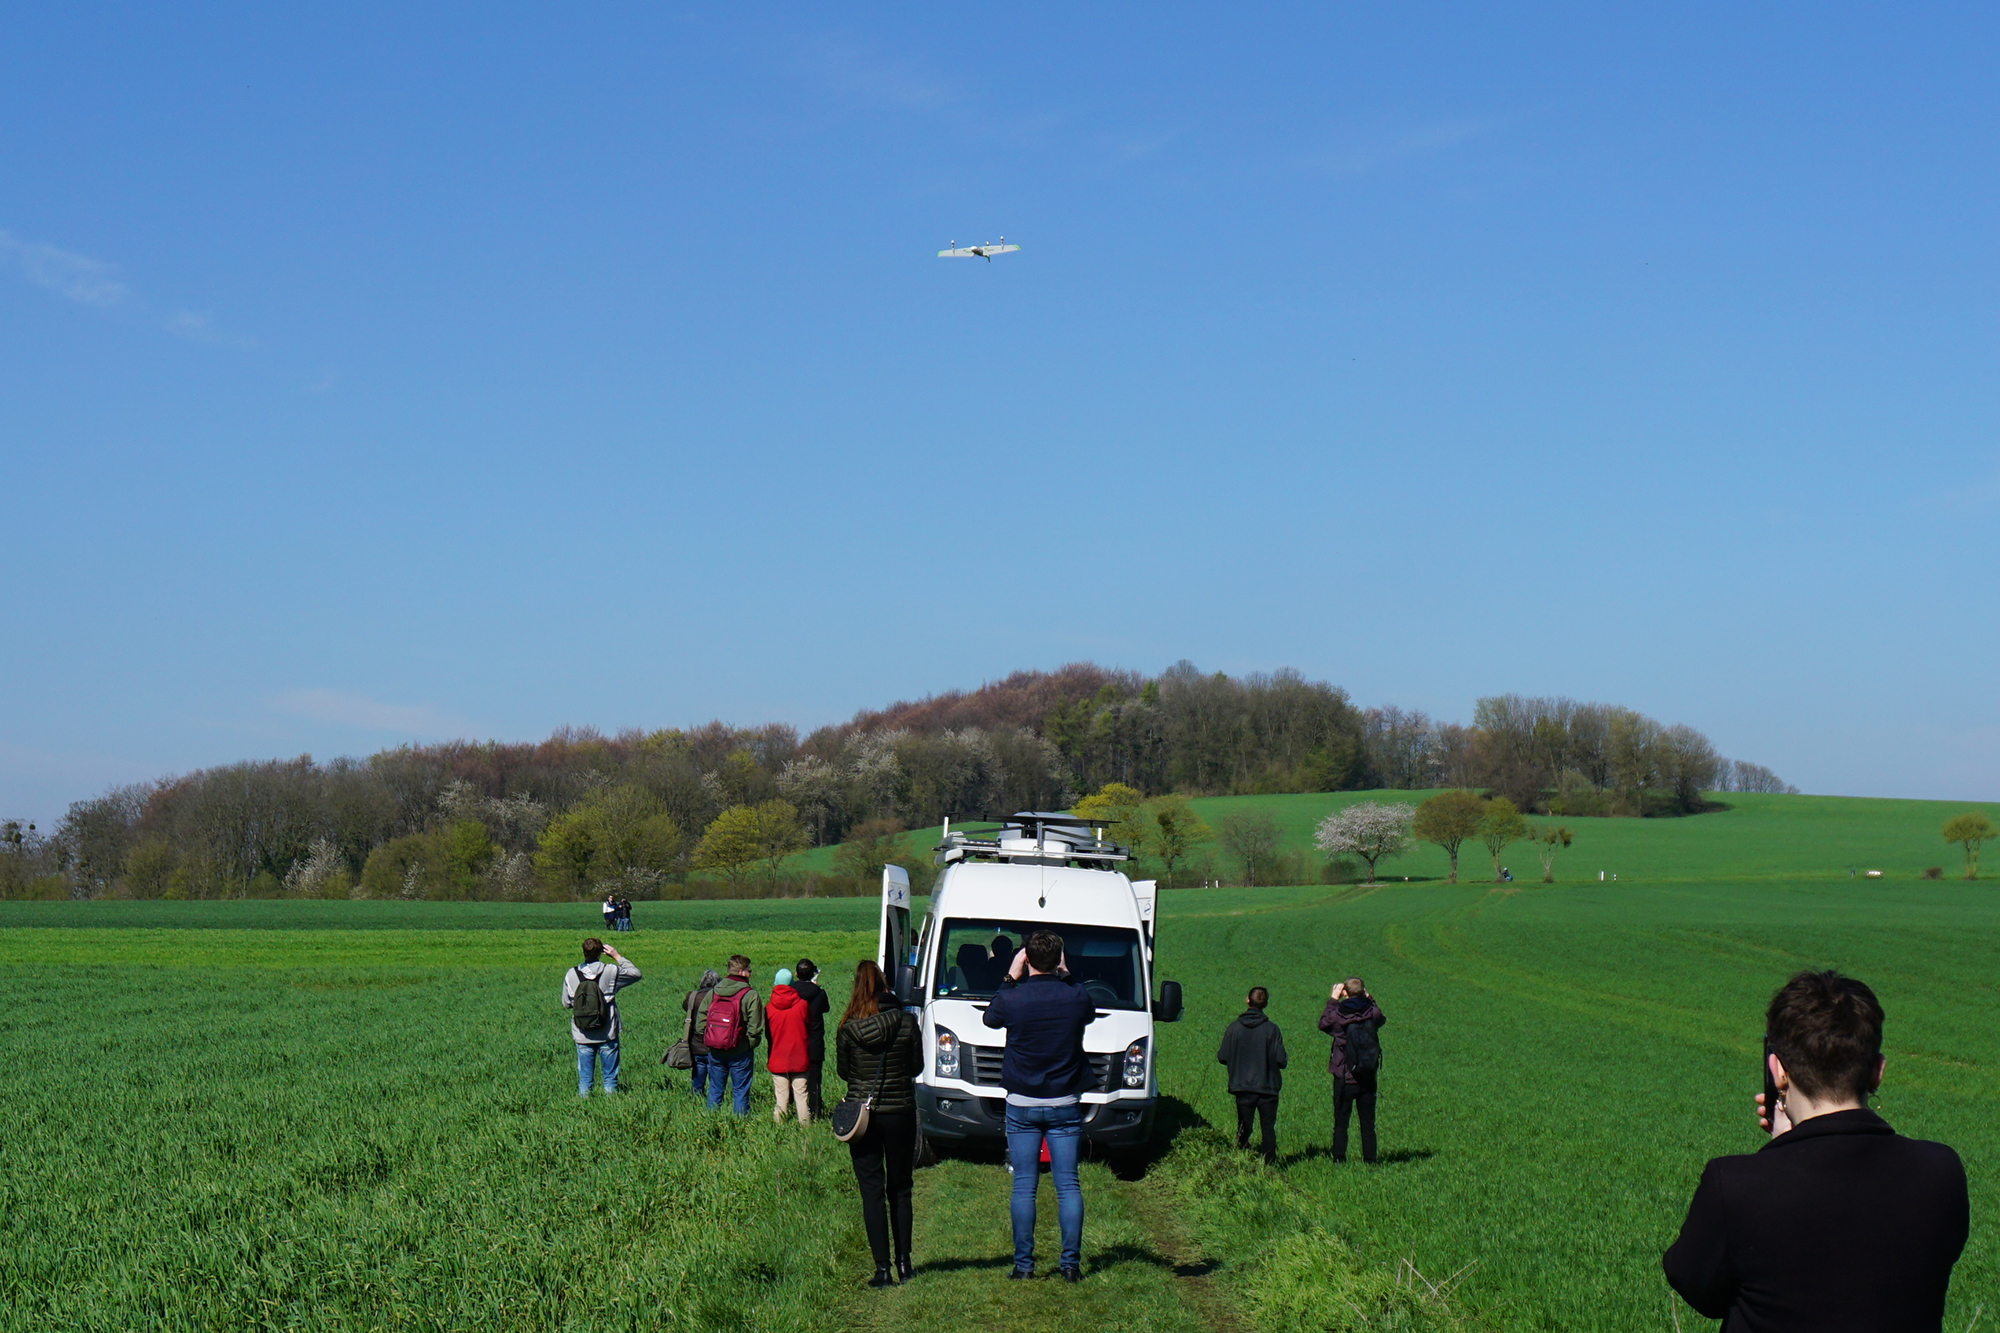 Erster grenzüberschreitender Drohnenflug zwischen Heerlen und Aachen: Die "Tiltwing Neo" setzt zur Landung an (Bild: Dogan Malicki/BRF)